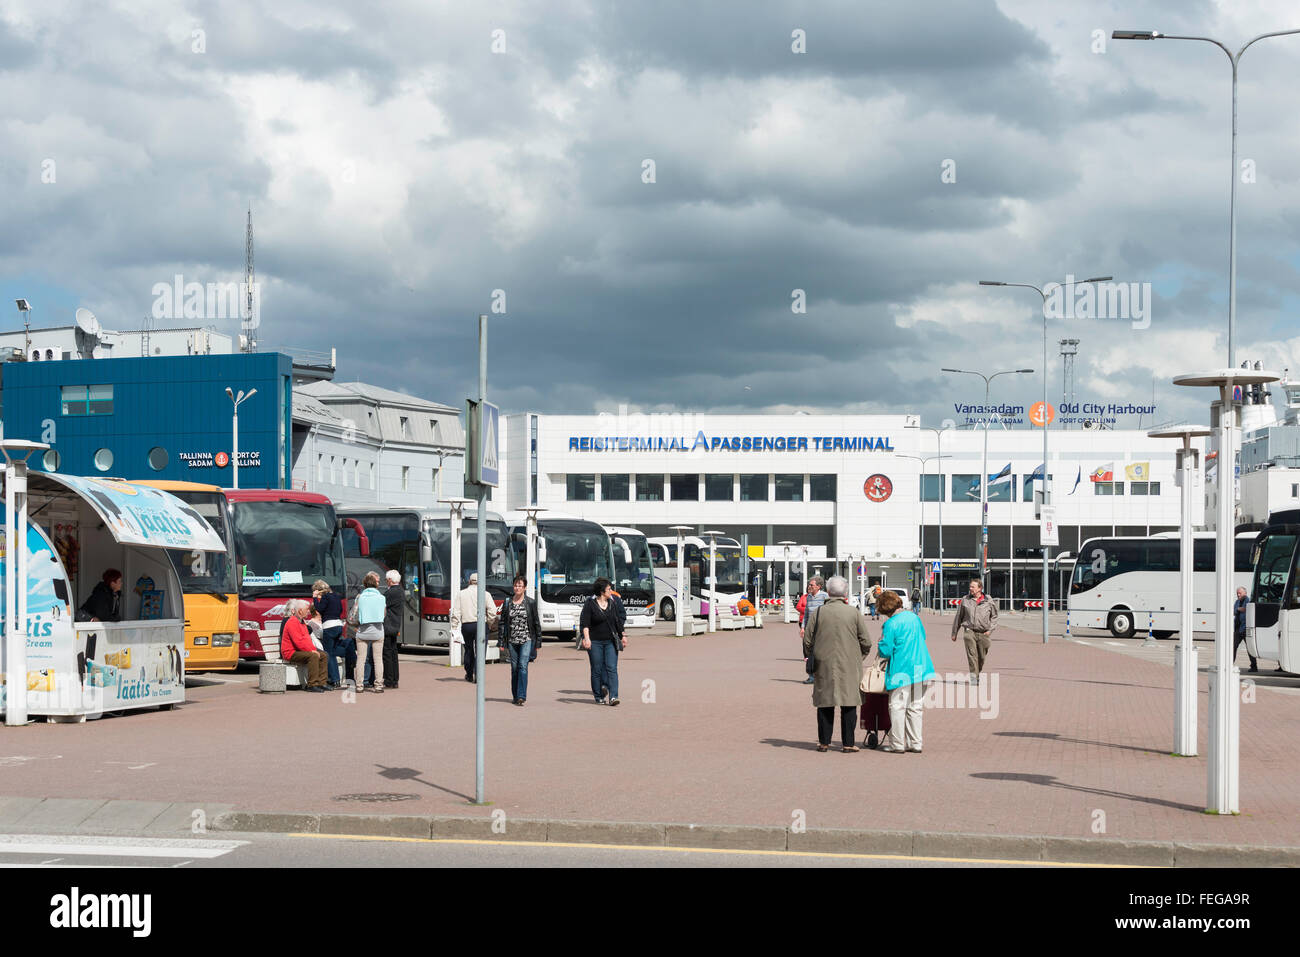 Reisiterminal un terminal pour passagers, Port de Tallinn, Tallinn, Tartu County, République d'Estonie Banque D'Images